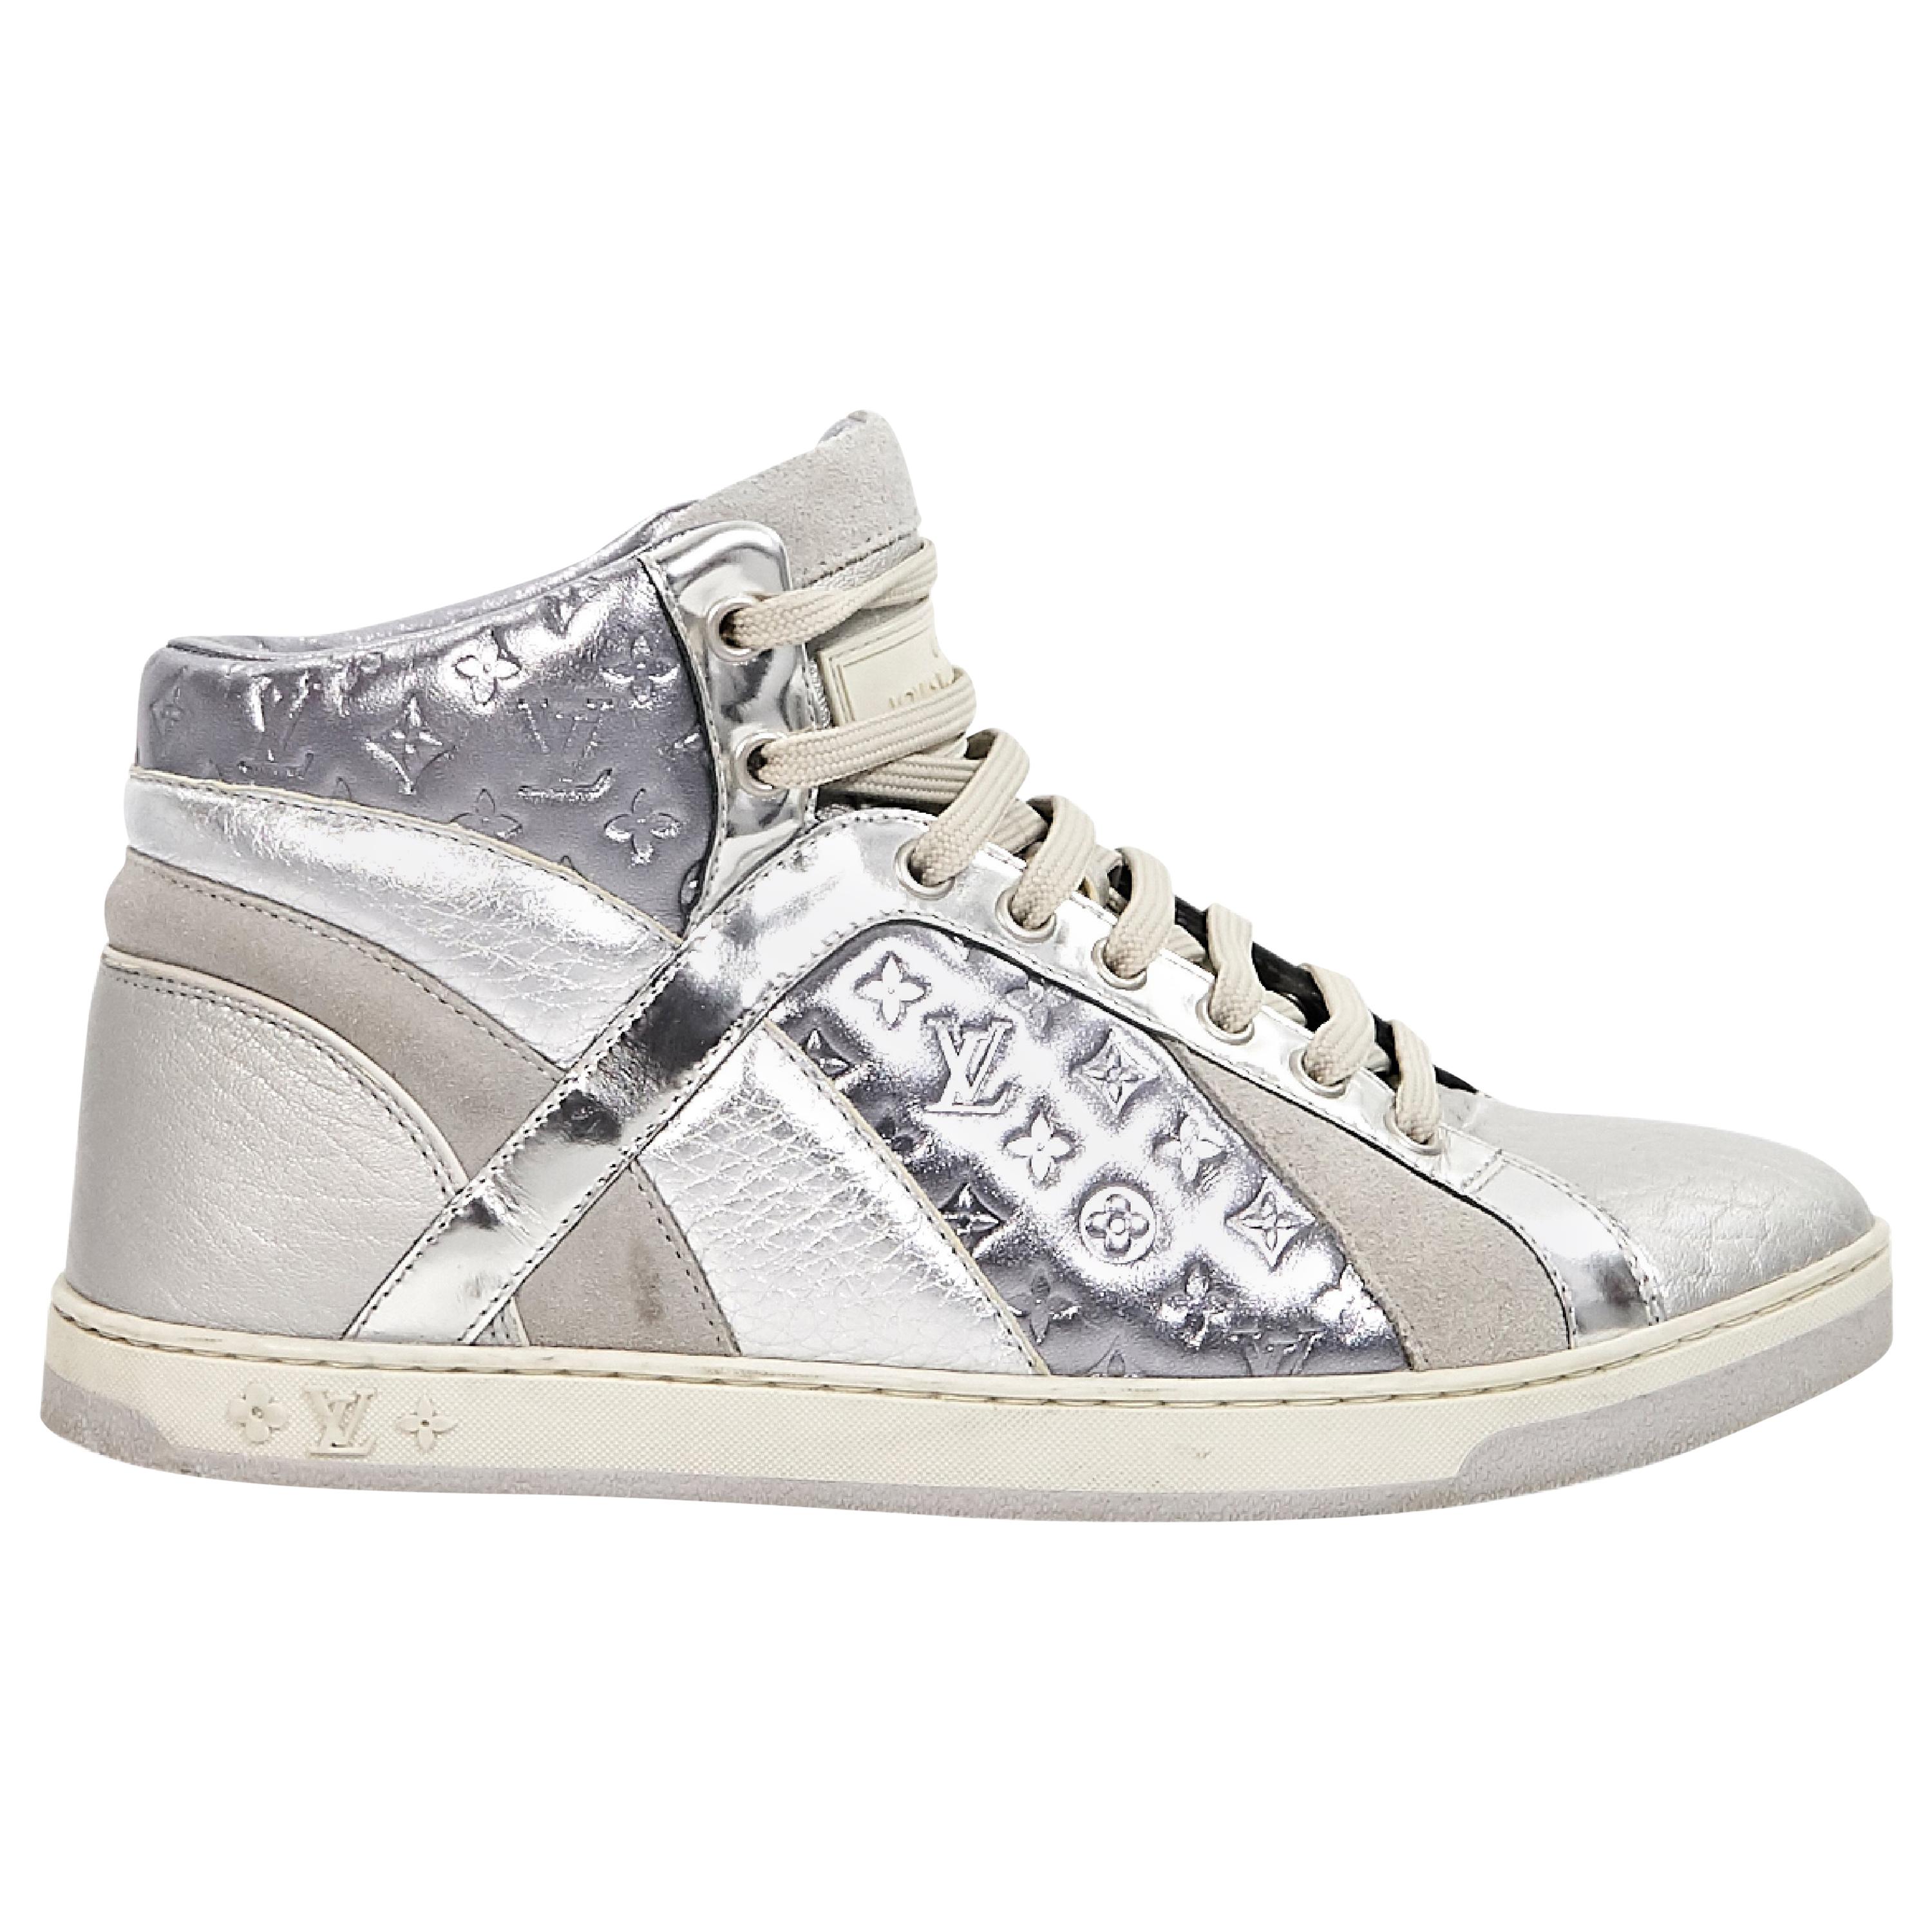 Metallic Silver Louis Vuitton High-Top Sneakers